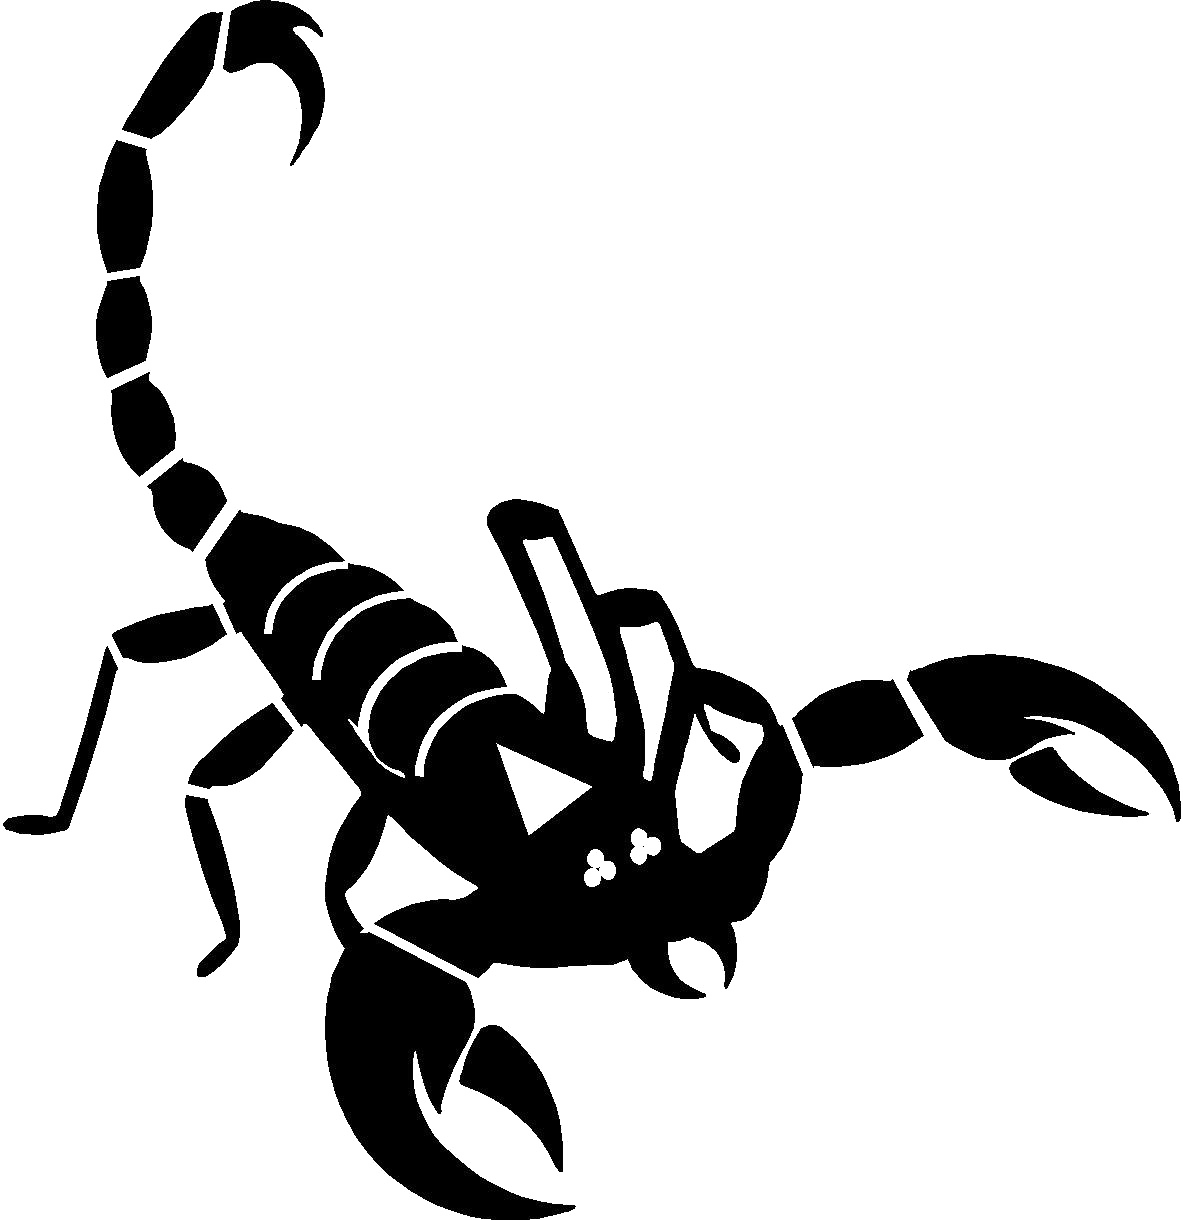 Black Scorpion Transparent Image